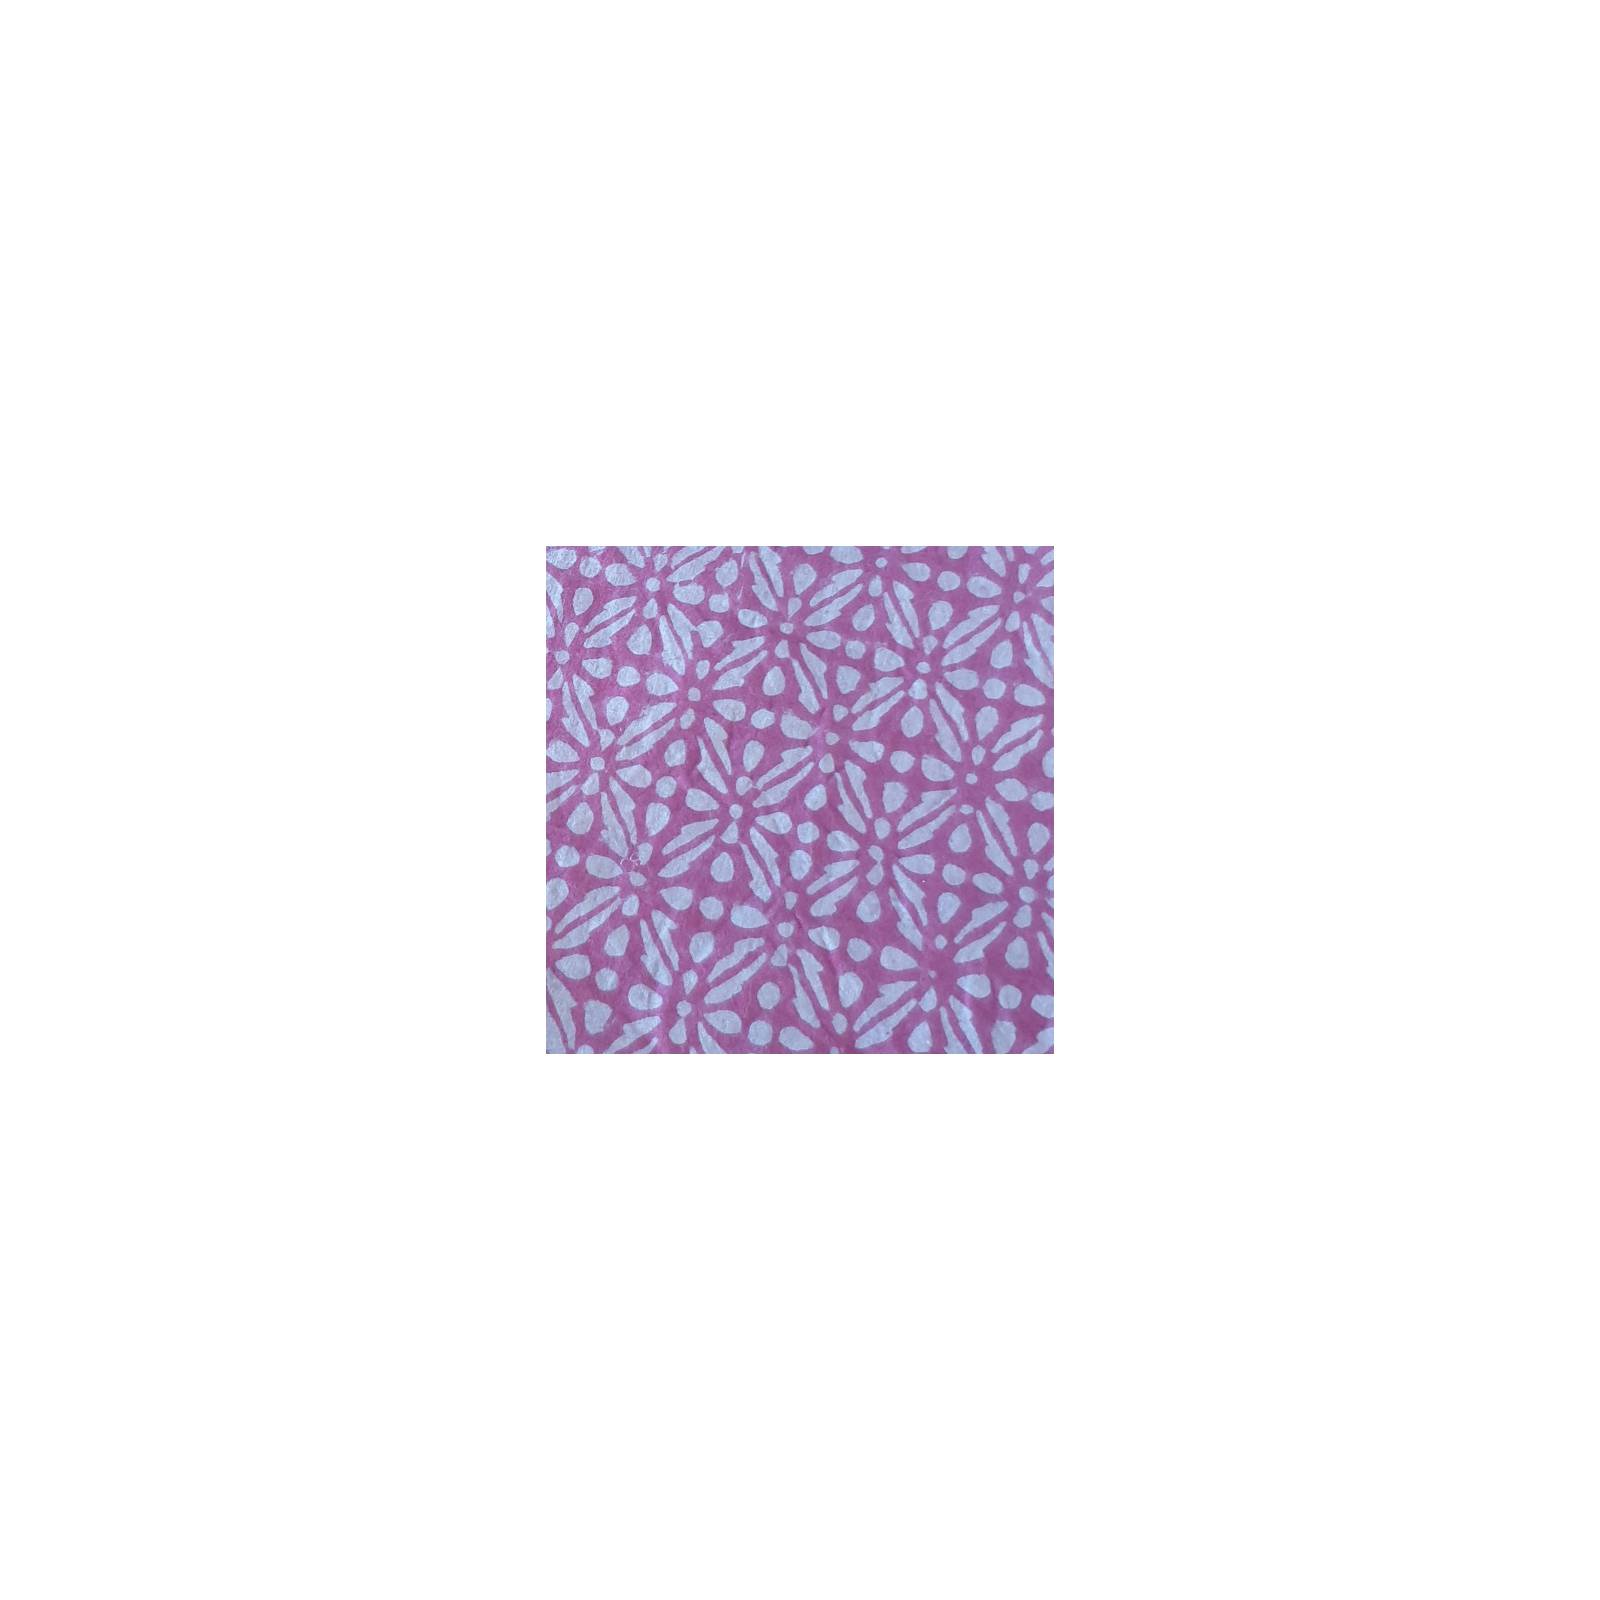 Ventes privées Set de 4 serviettes De Table - Stripes Block Print - 100% Coton Ethnique TB119 PURPLE